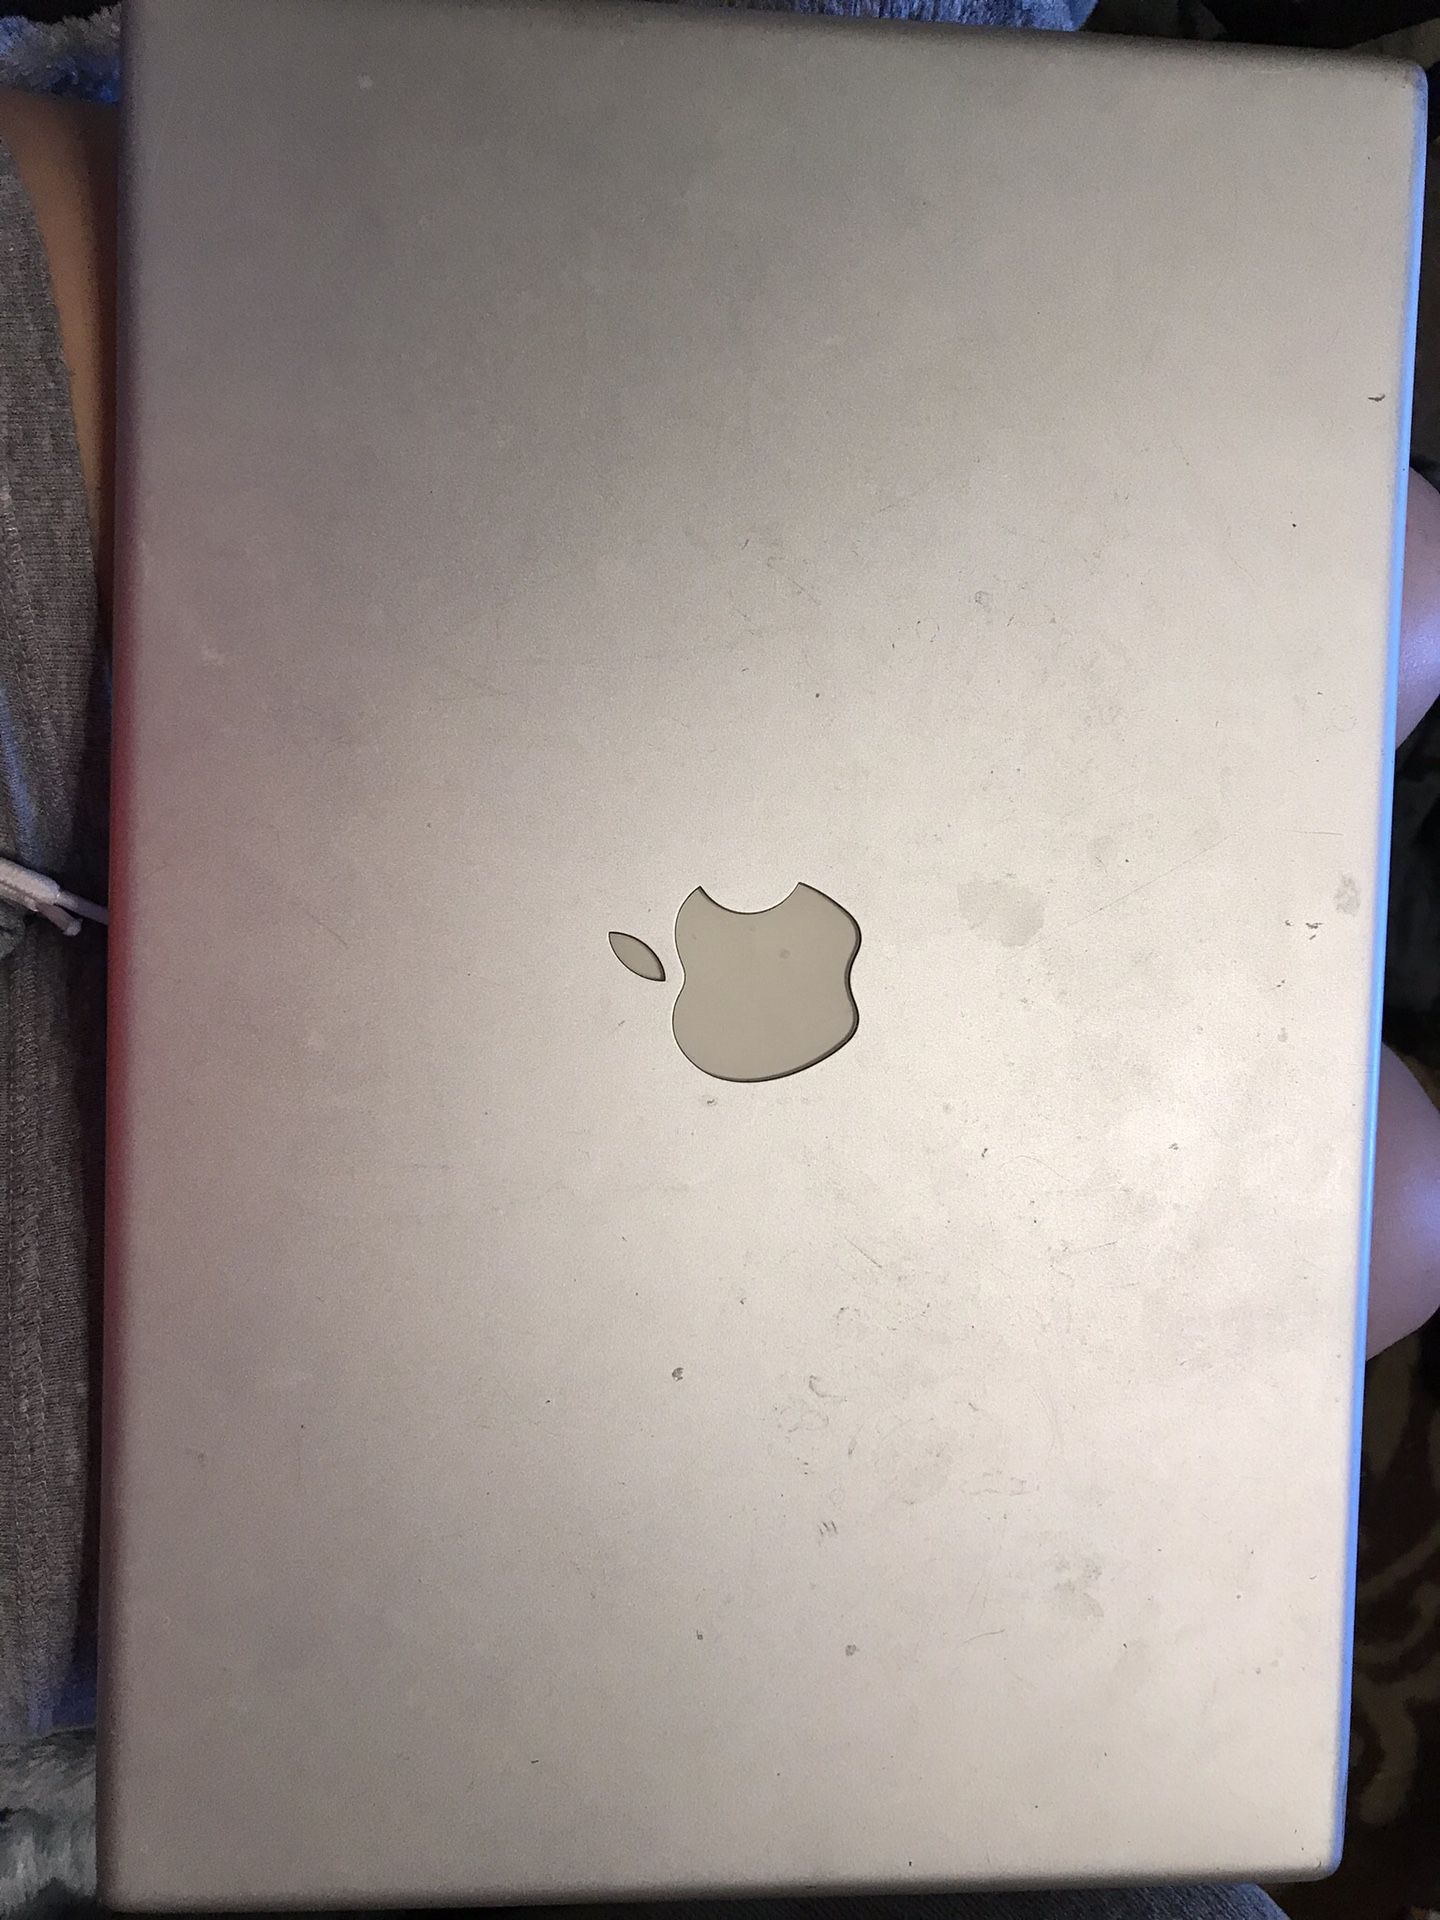 2006 Macbook Pro - 15 inch